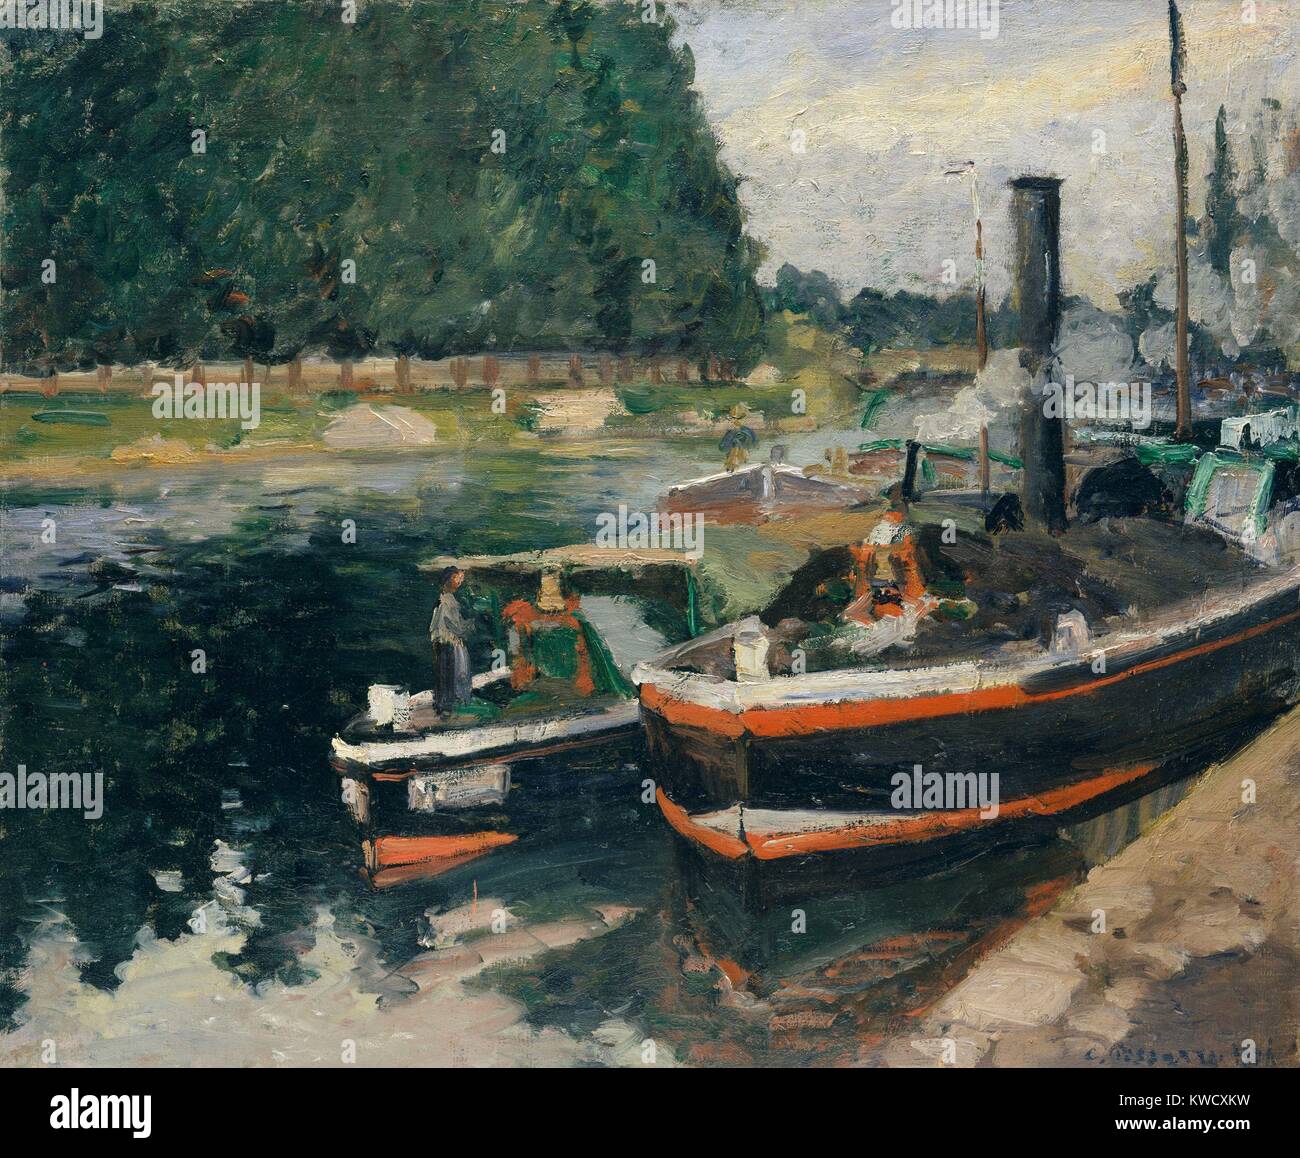 Des Barges à Pontoise, par Camille Pissarro, 1876, la peinture impressionniste français, huile sur toile. Les barges marchandises transportées sur l'Oise au port de Pontoise, où l'artiste vivait (BSLOC 2017 3 55) Banque D'Images